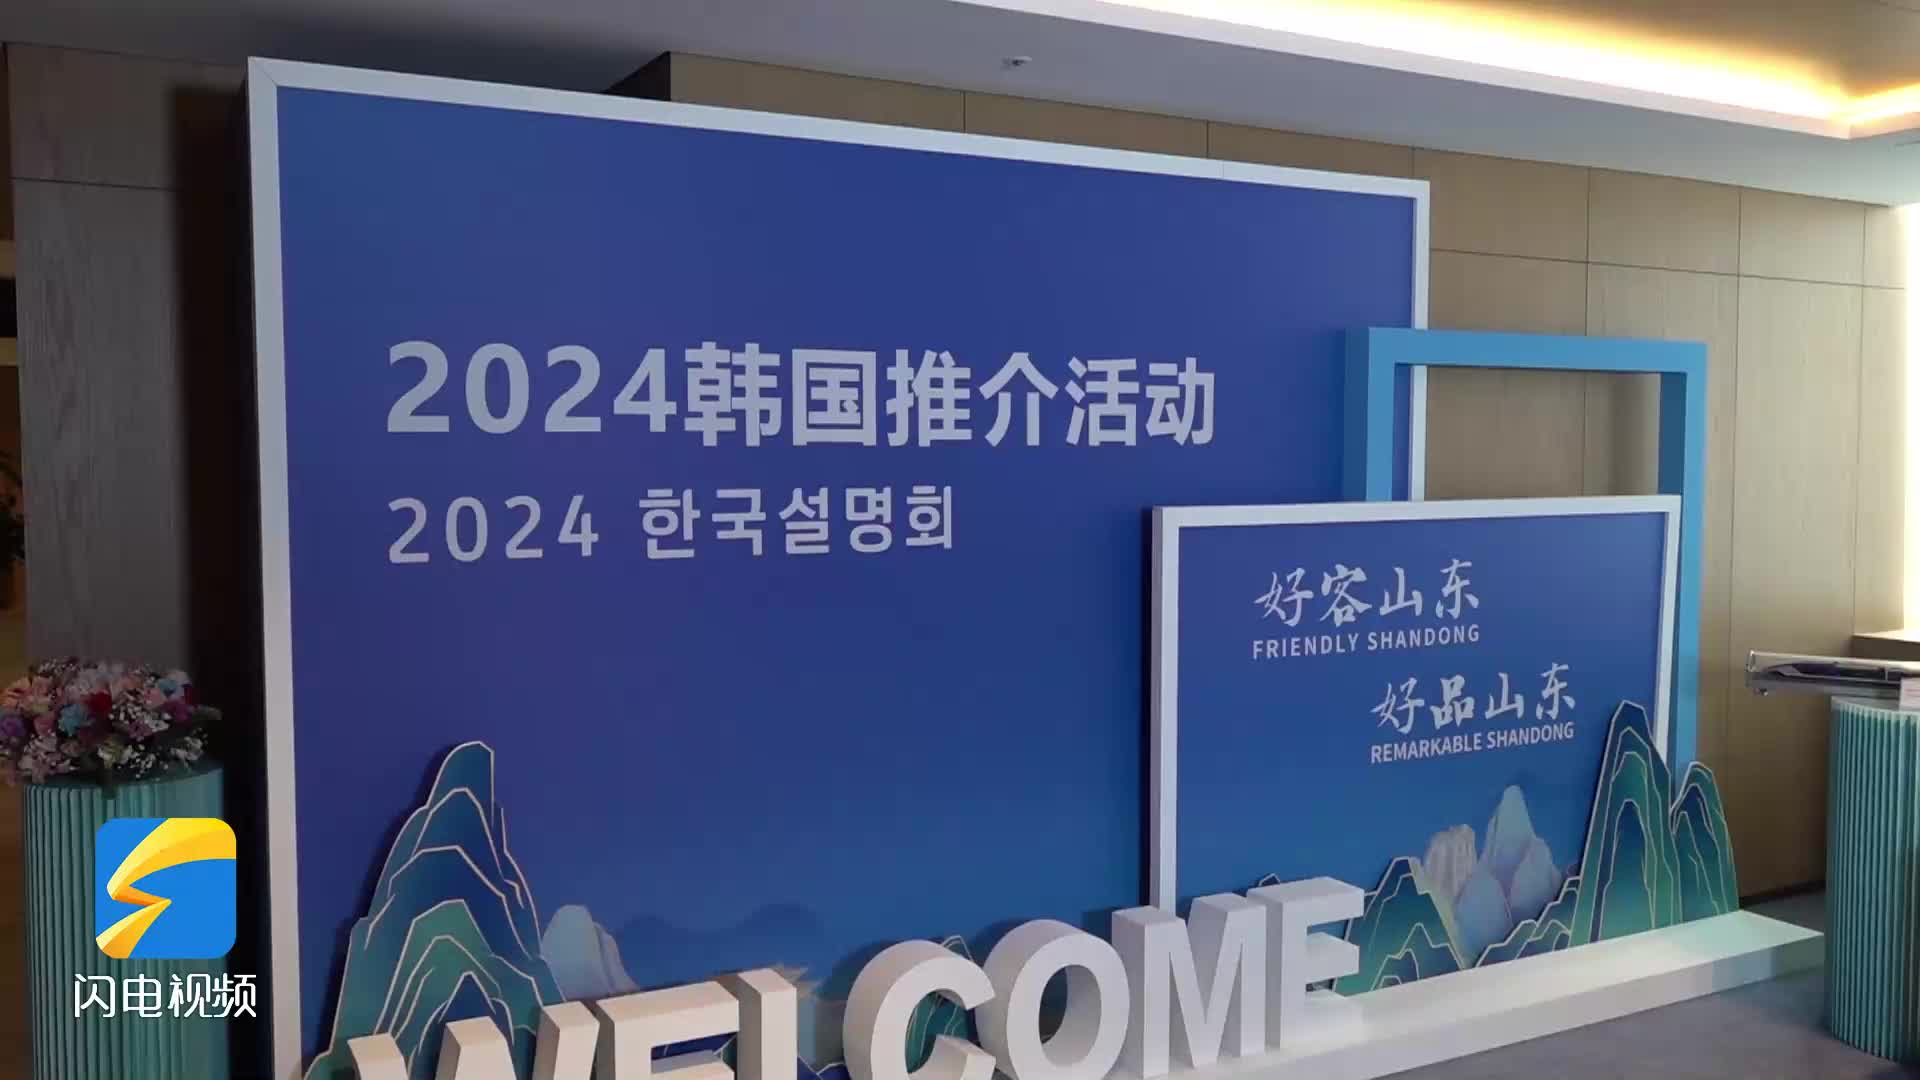 “好客山东 好品山东”2024韩国推介会 外国友人在线点赞山东